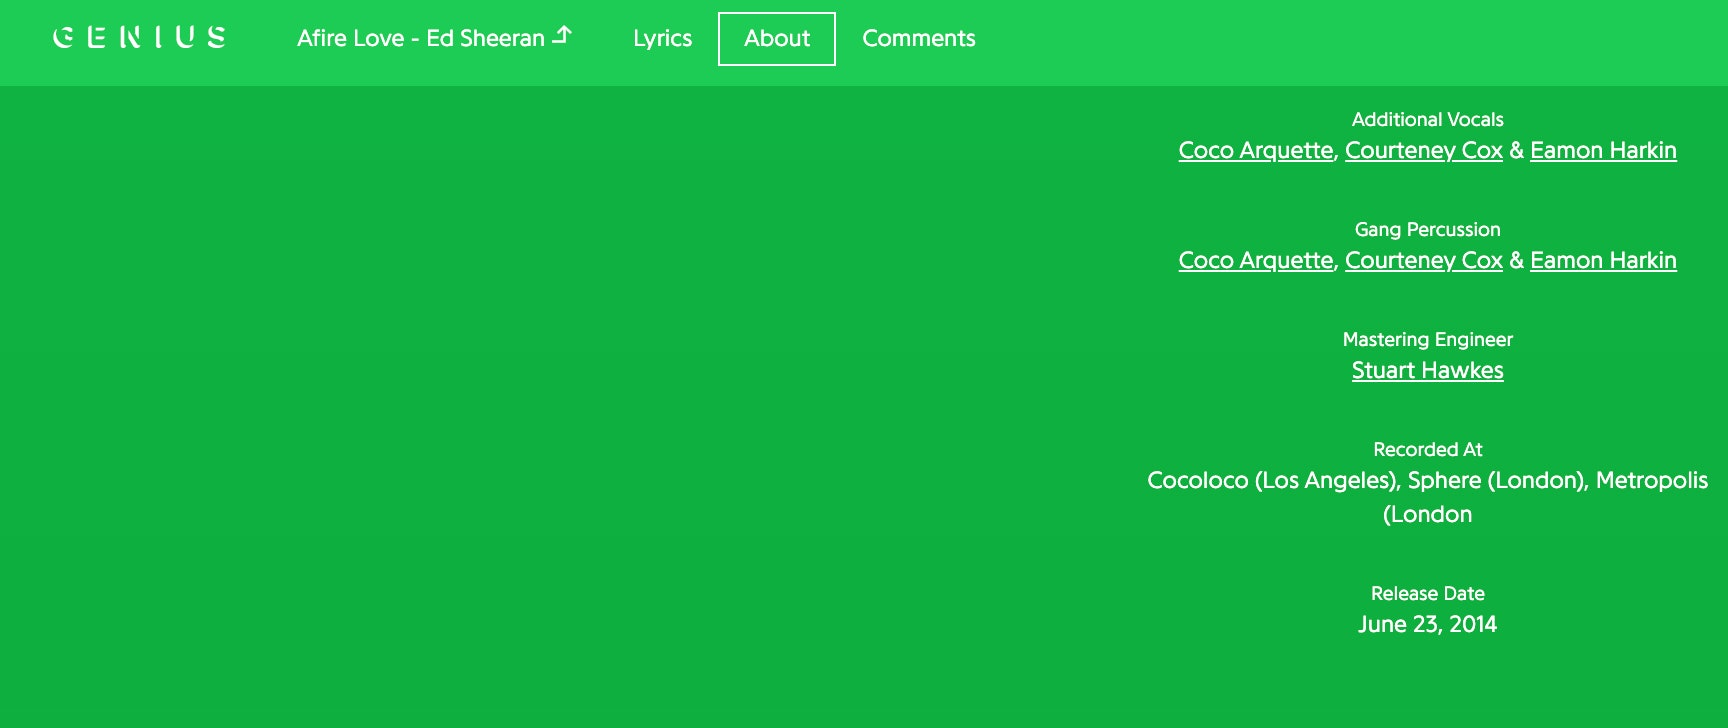 Η Courteney Cox είναι κάτι περισσότερο από φίλες με τον Ed Sheeran - Τραγουδάει στα άλμπουμ του